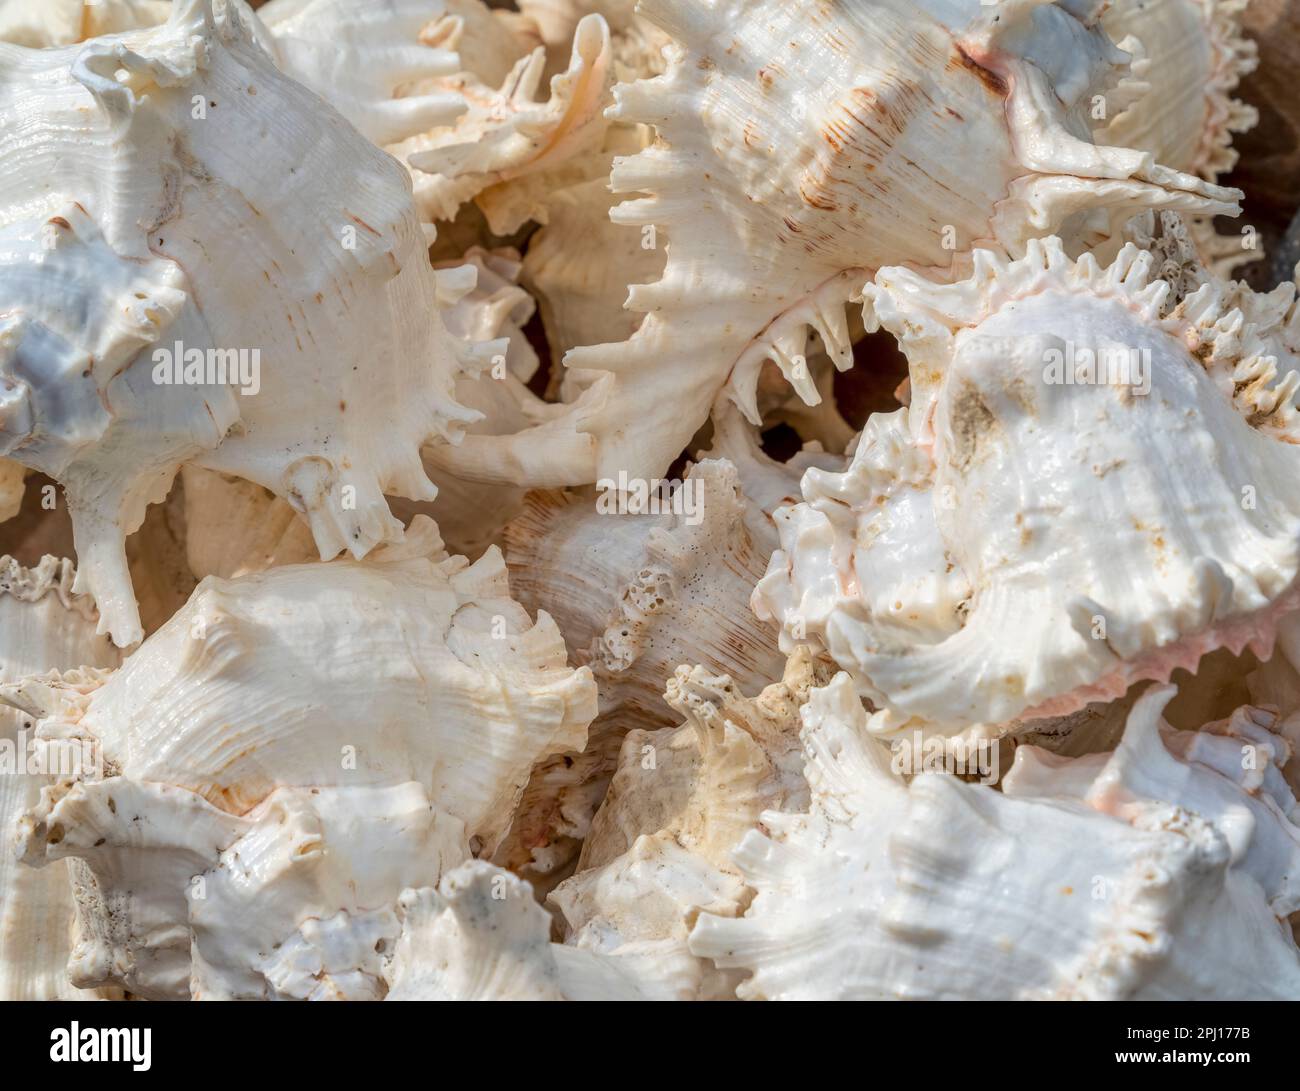 Inquadratura completa che mostra un sacco di conchiglie marine bianche Foto Stock